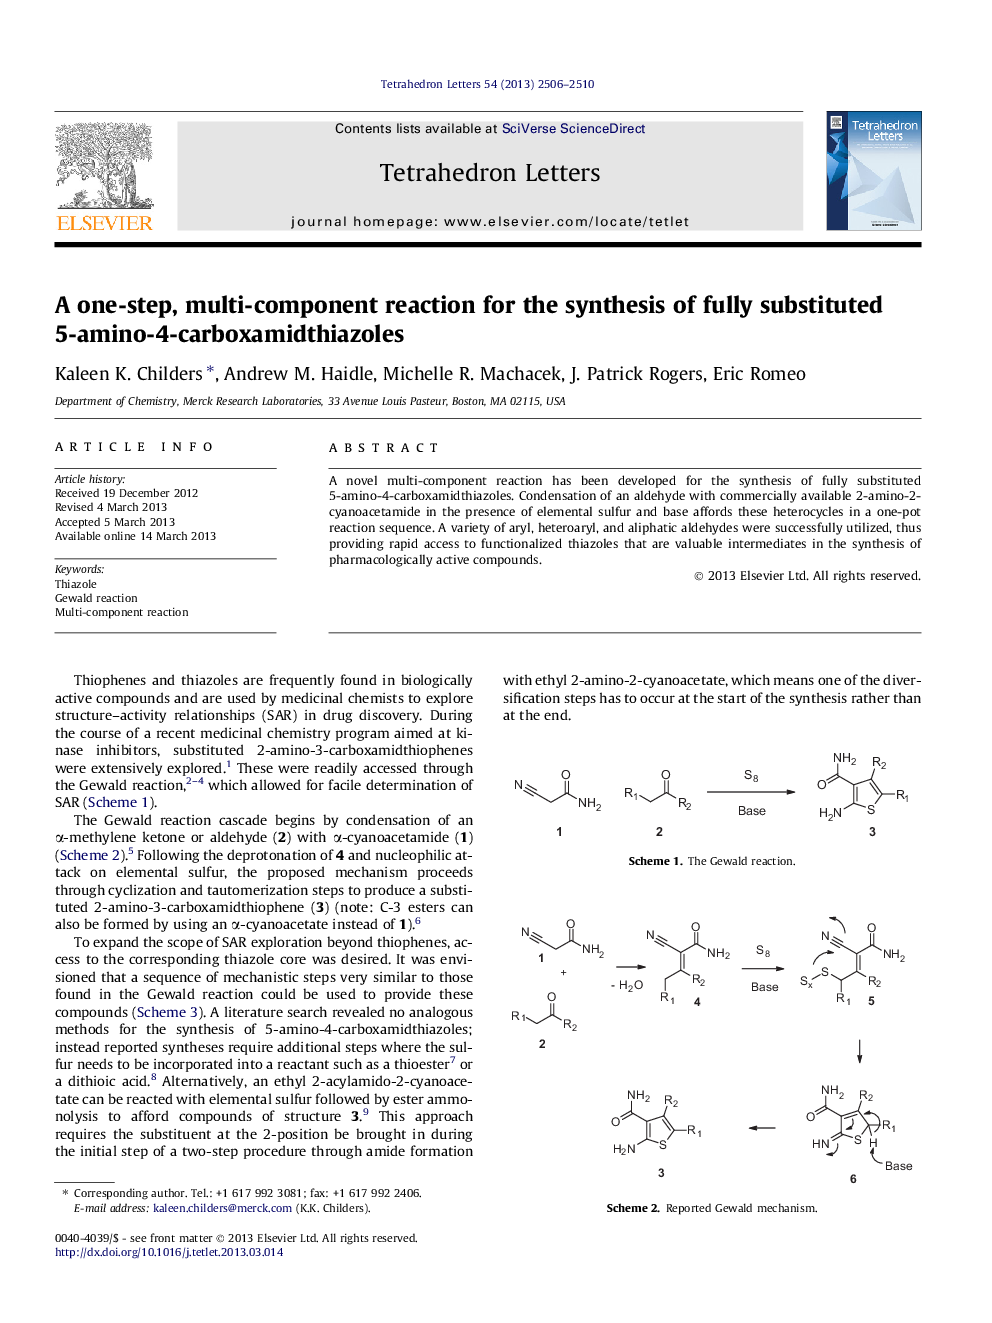 یک واکنش چند مرحله ای یک مرحله ای برای سنتز 5 آمینو 4-کاربوک های آمیدتیازول 